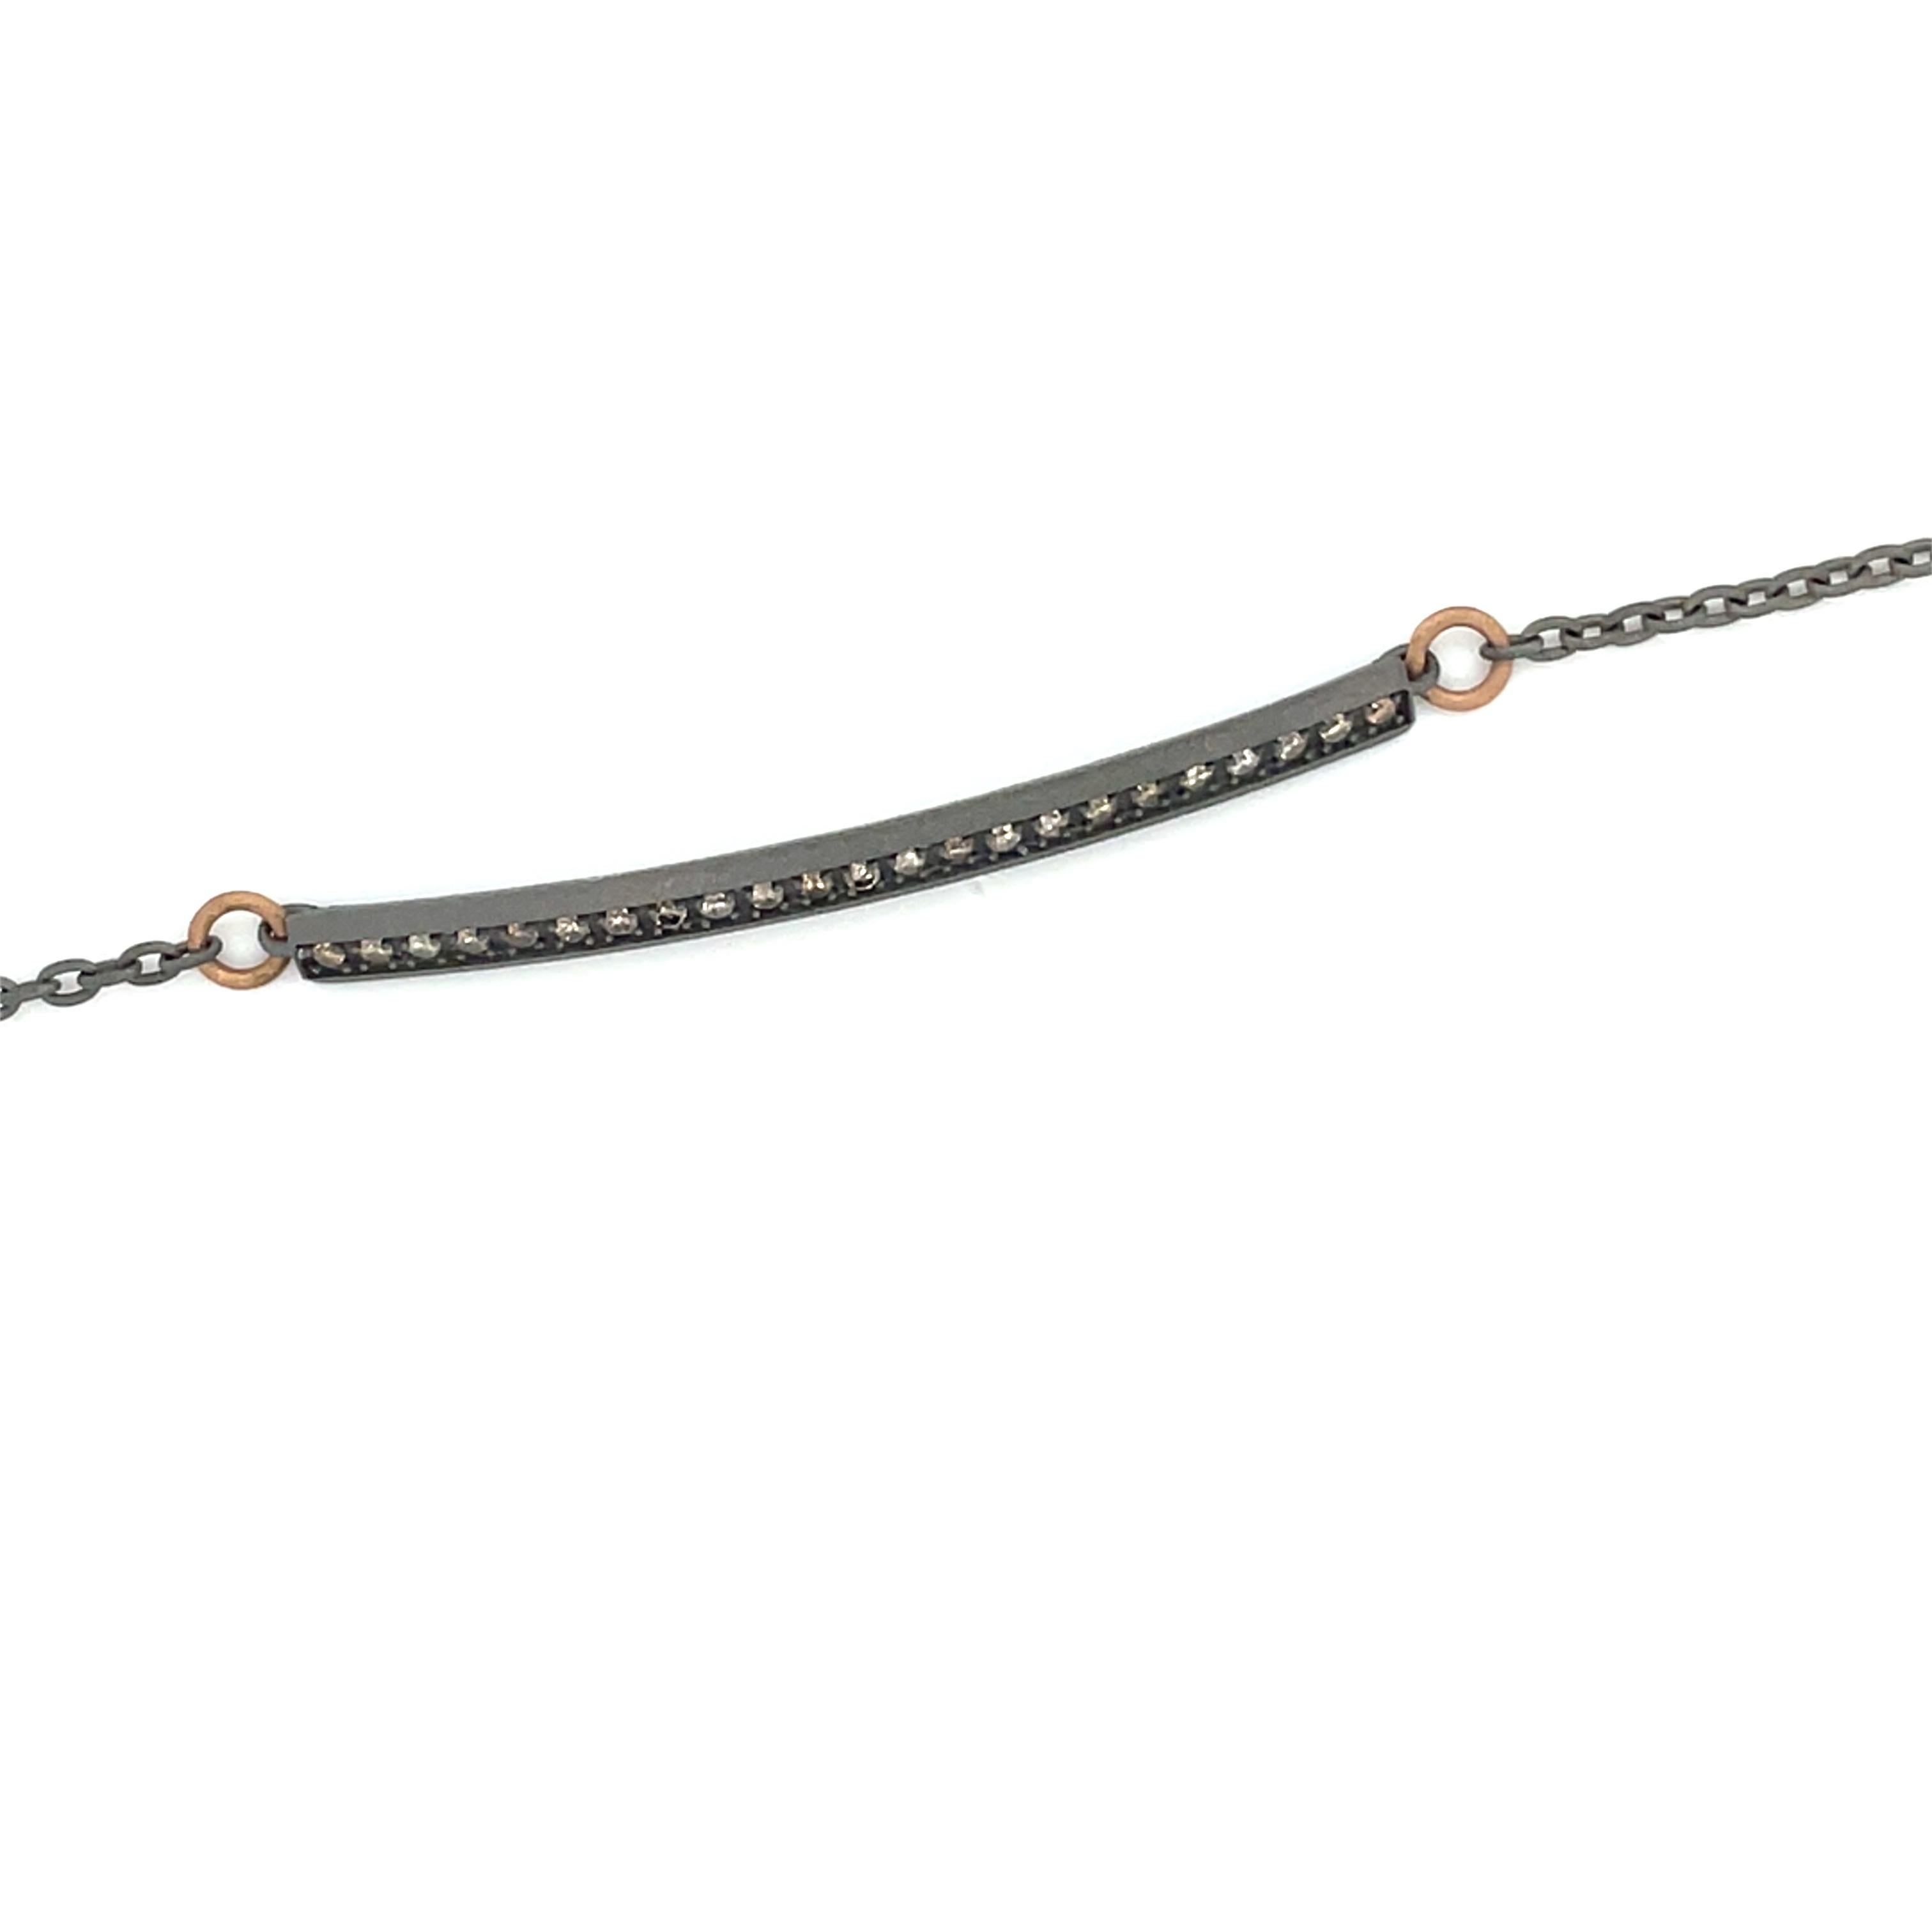 Ce bracelet stylé en titane fait partie de notre Collection Heroes. Ce bracelet moderne est orné de 12 diamants ronds bruns naturels d'un total de 0,23 carat avec des détails en or rose 18 carats. Le bracelet mesure 20 cm de long. Un design sensible